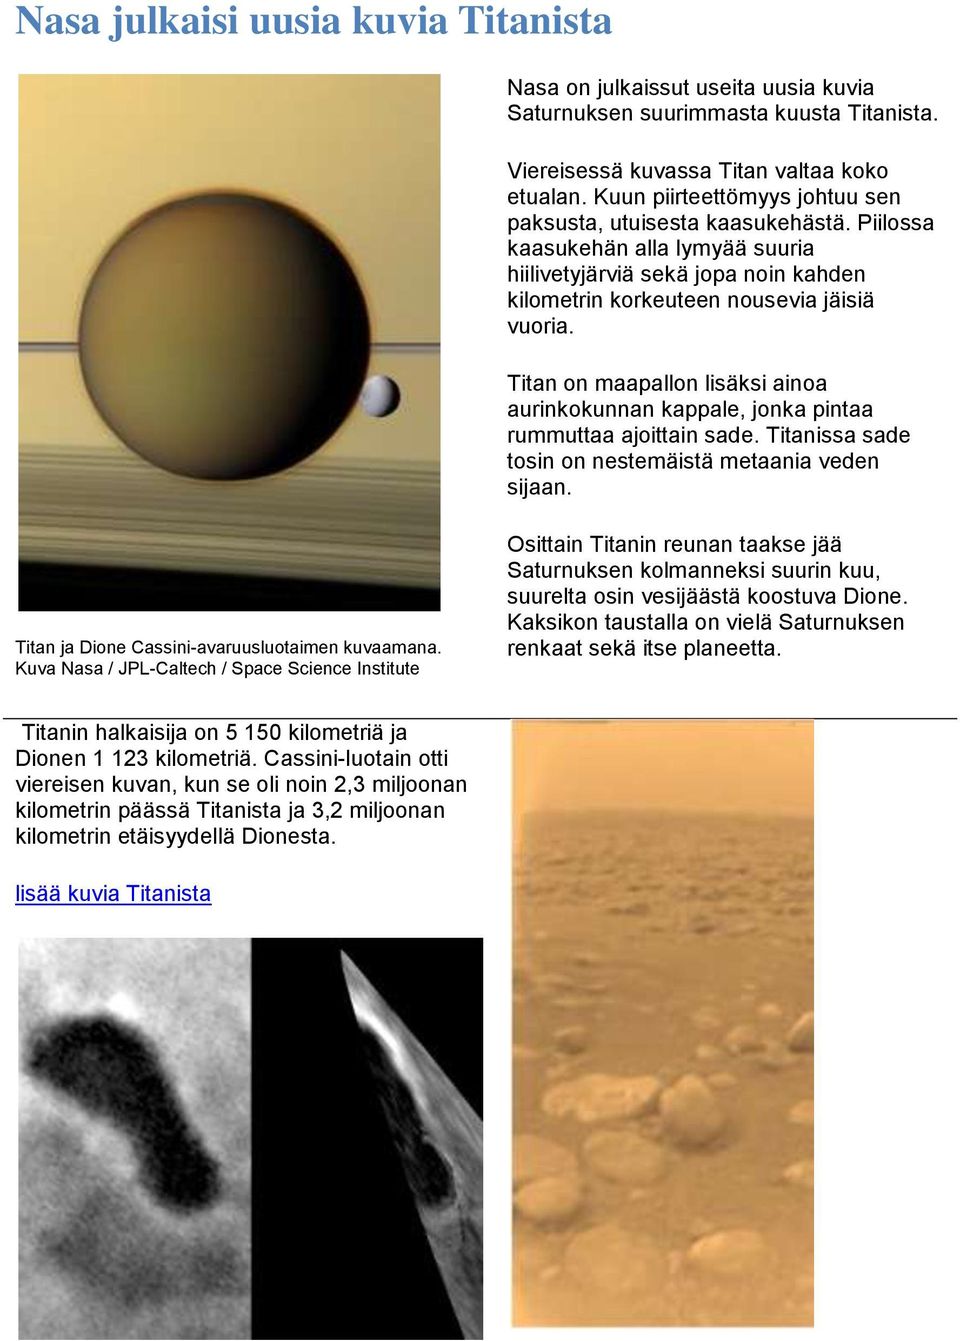 Titan on maapallon lisäksi ainoa aurinkokunnan kappale, jonka pintaa rummuttaa ajoittain sade. Titanissa sade tosin on nestemäistä metaania veden sijaan.